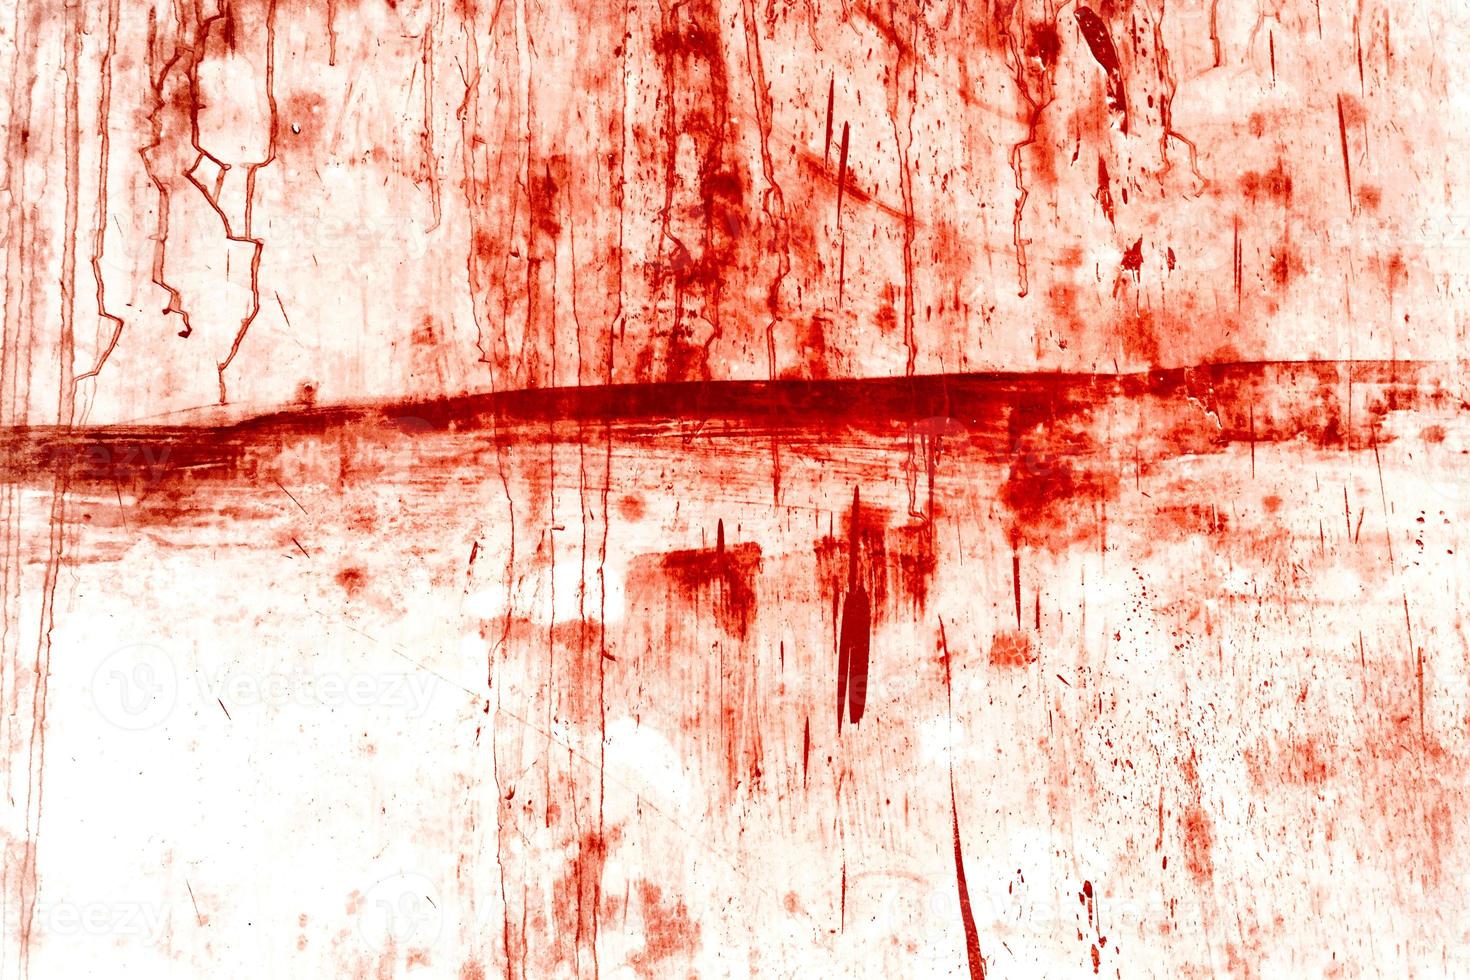 fondo rojo, pared sangrienta aterradora. pared blanca con salpicaduras de sangre para el fondo de halloween. foto